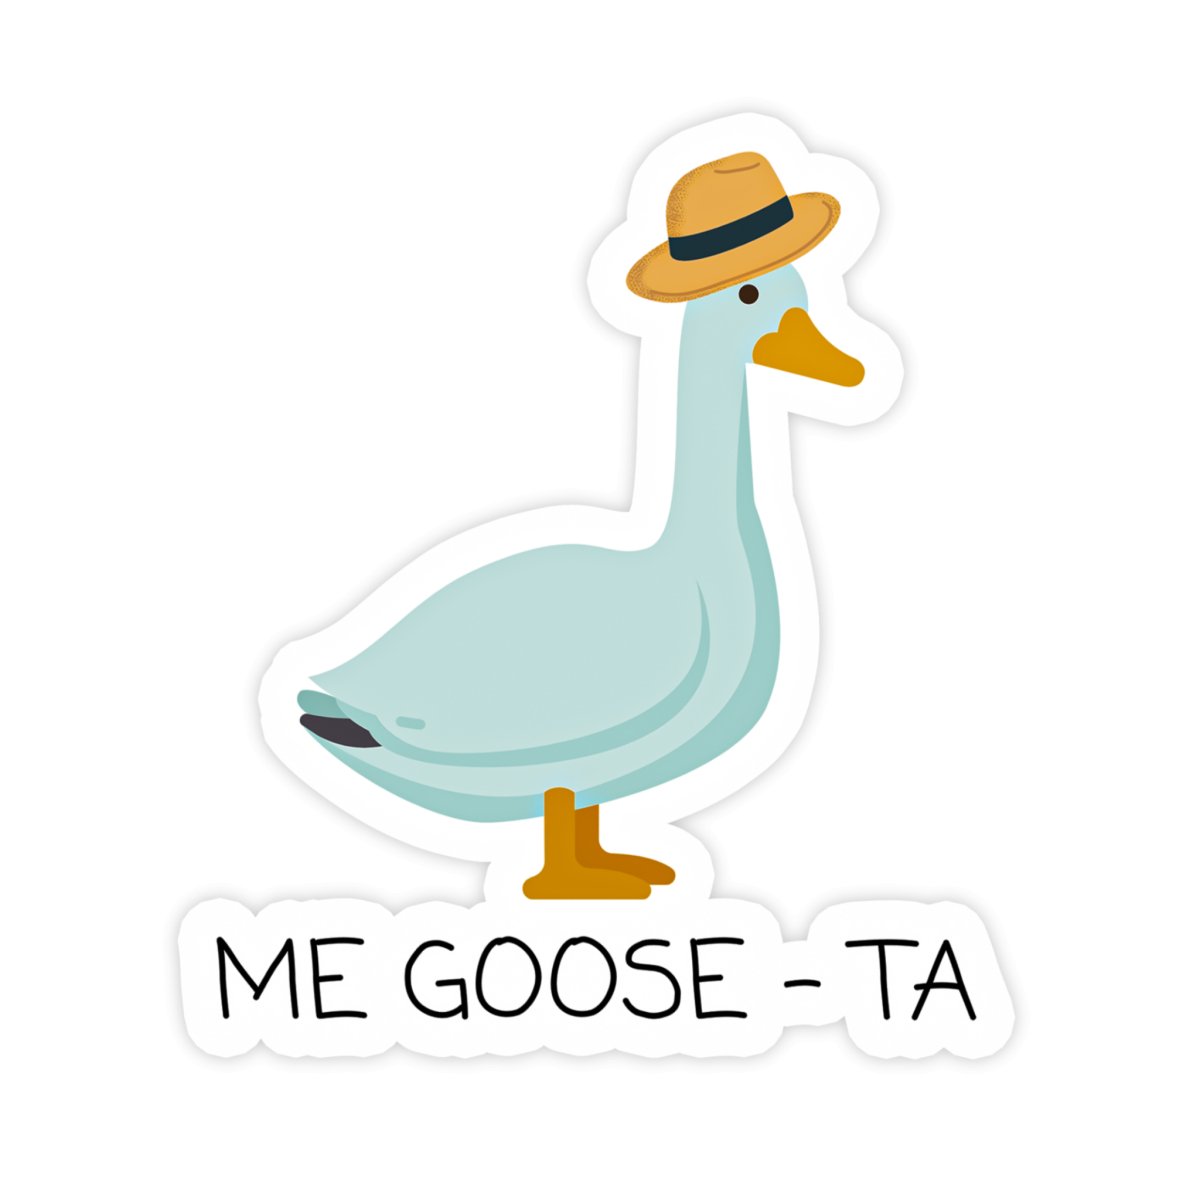 Me Goose-Ta Cute Goose Sticker - stickerbullMe Goose-Ta Cute Goose StickerRetail StickerstickerbullstickerbullTaylor_MeGoose [#1]Me Goose-Ta Cute Goose Sticker